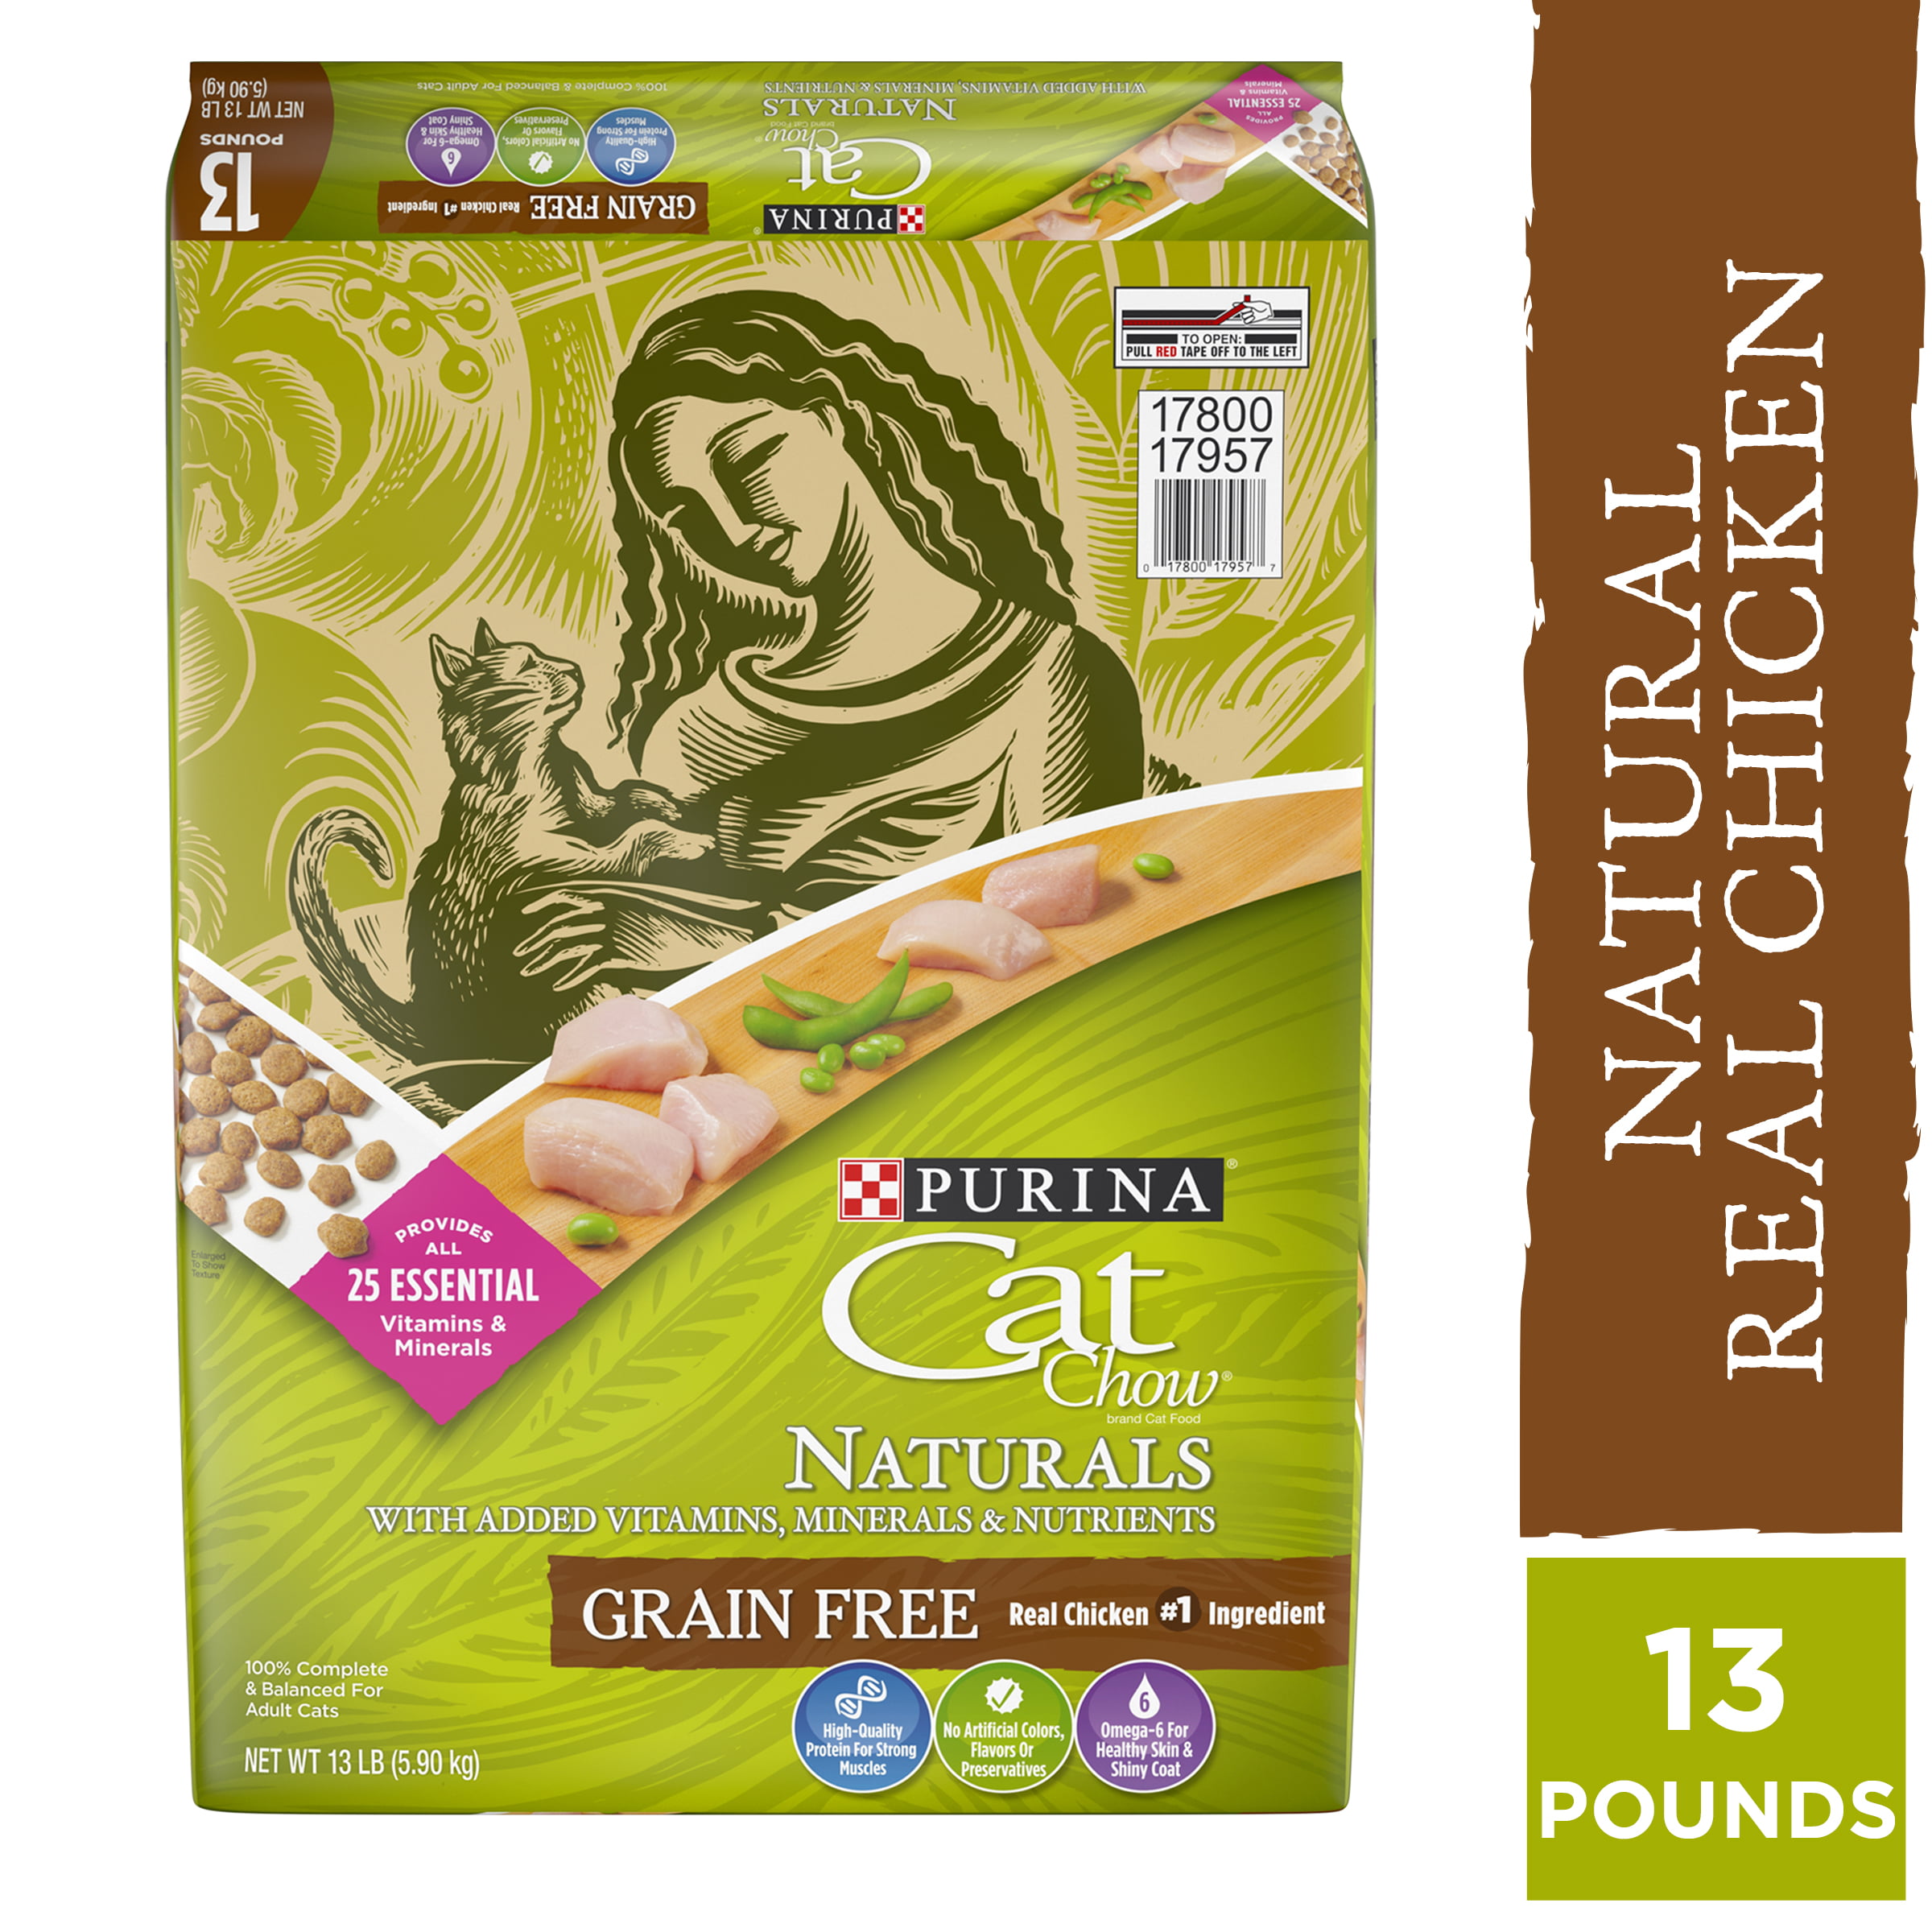 all natural grain free cat food